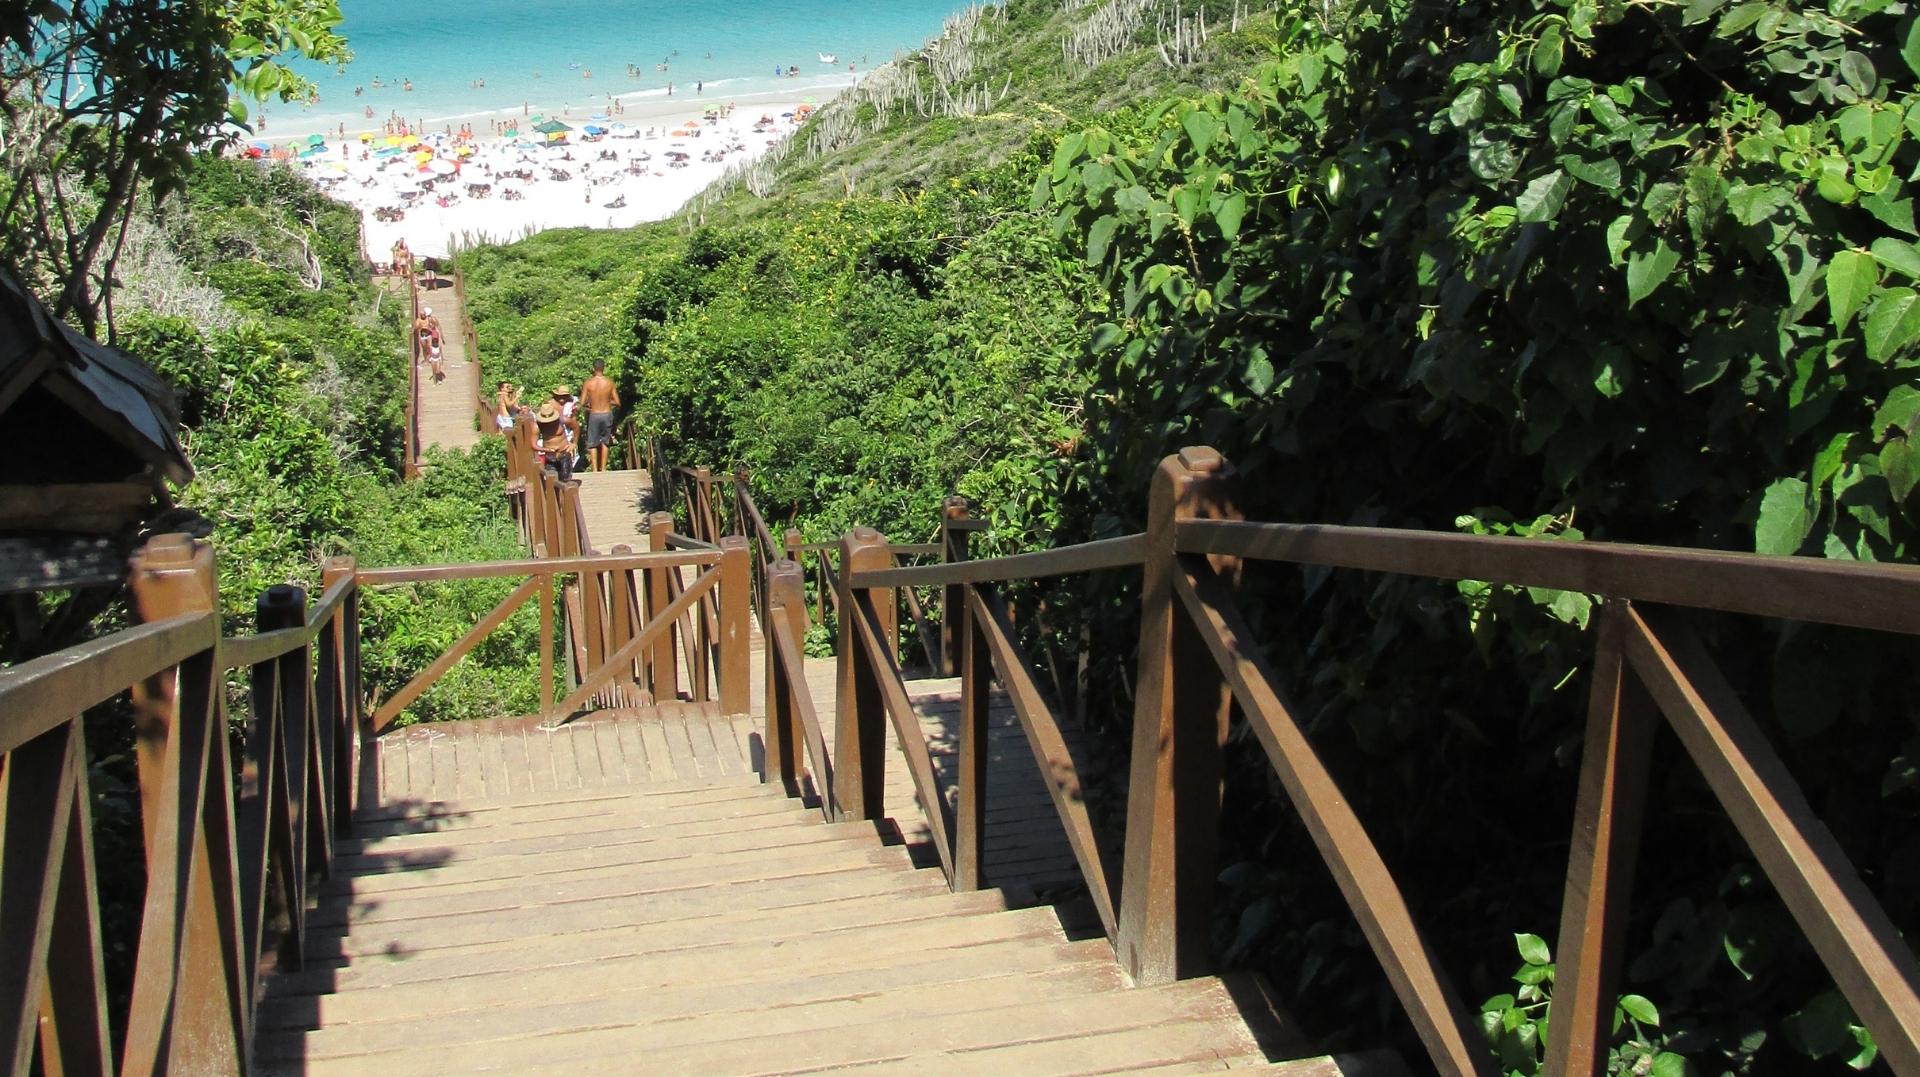 O que fazer em Arraial do Cabo: passeios e pontos turísticos | A famosa escada da Prainha, Arraial do Cabo - RJ | Conexão123